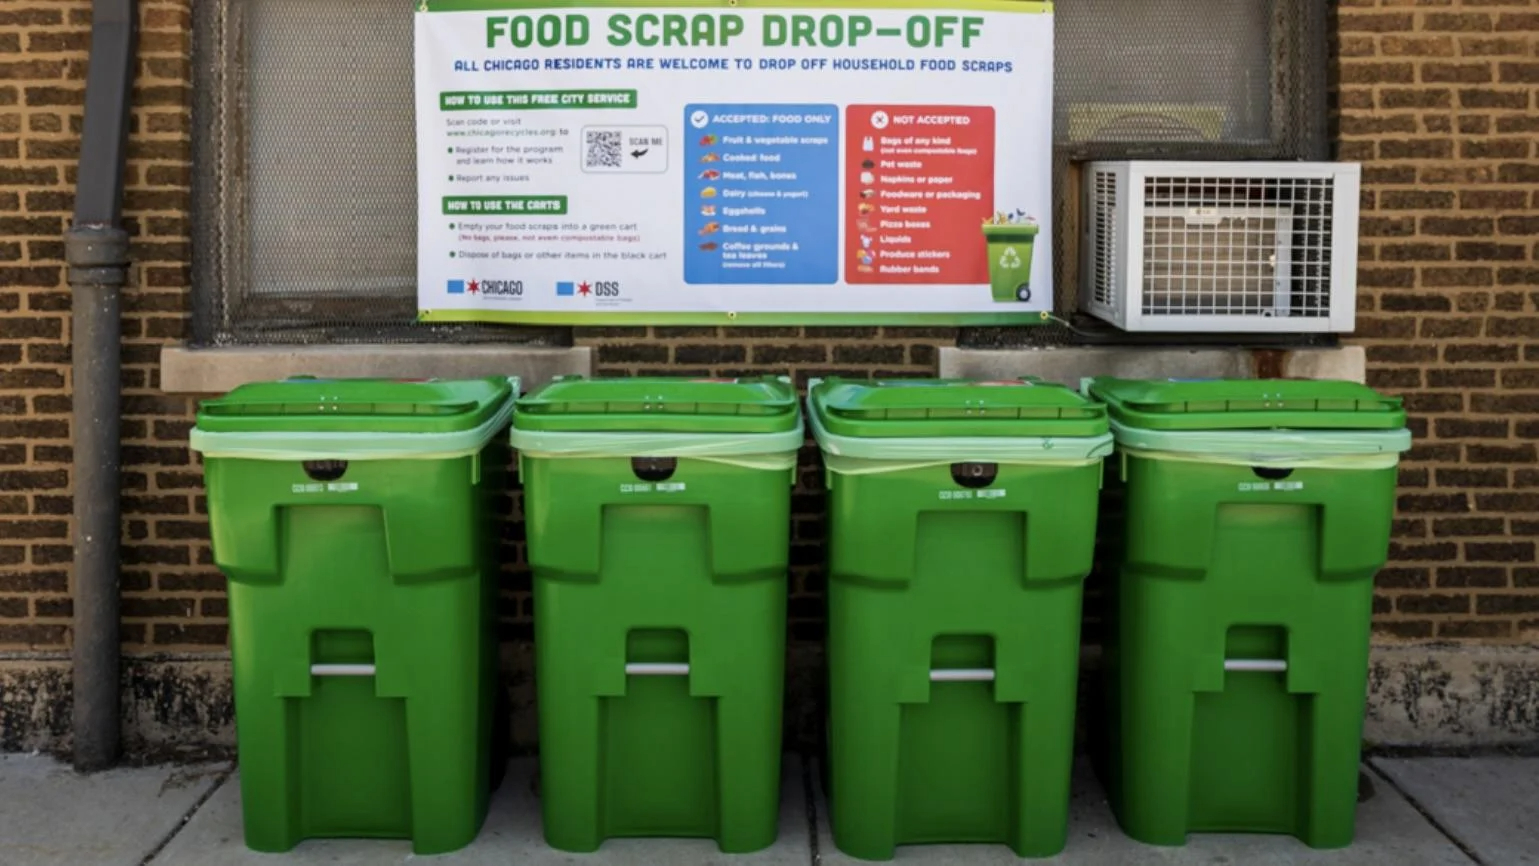 4 compost bins in Chicago's food scrap drop-off program